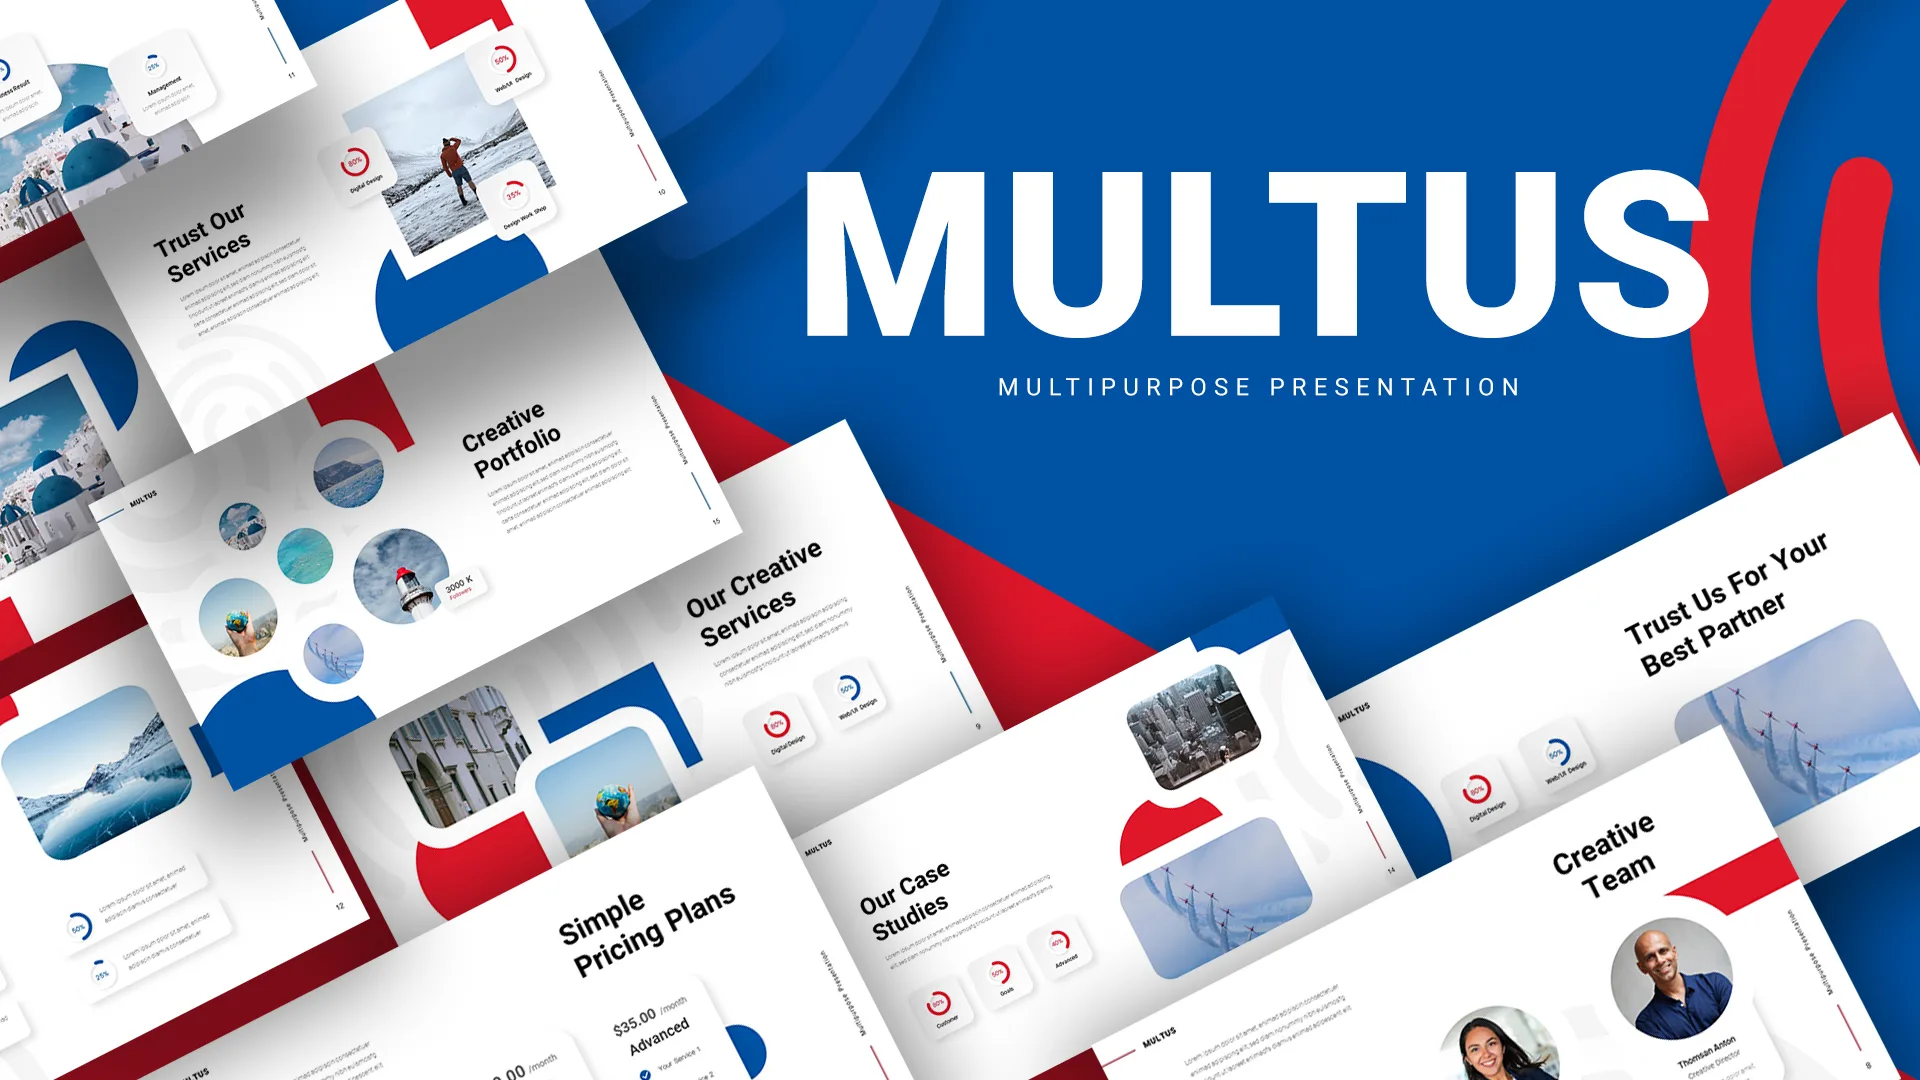 Multipurpose Presentation Templates for Google Slides - SlideKit